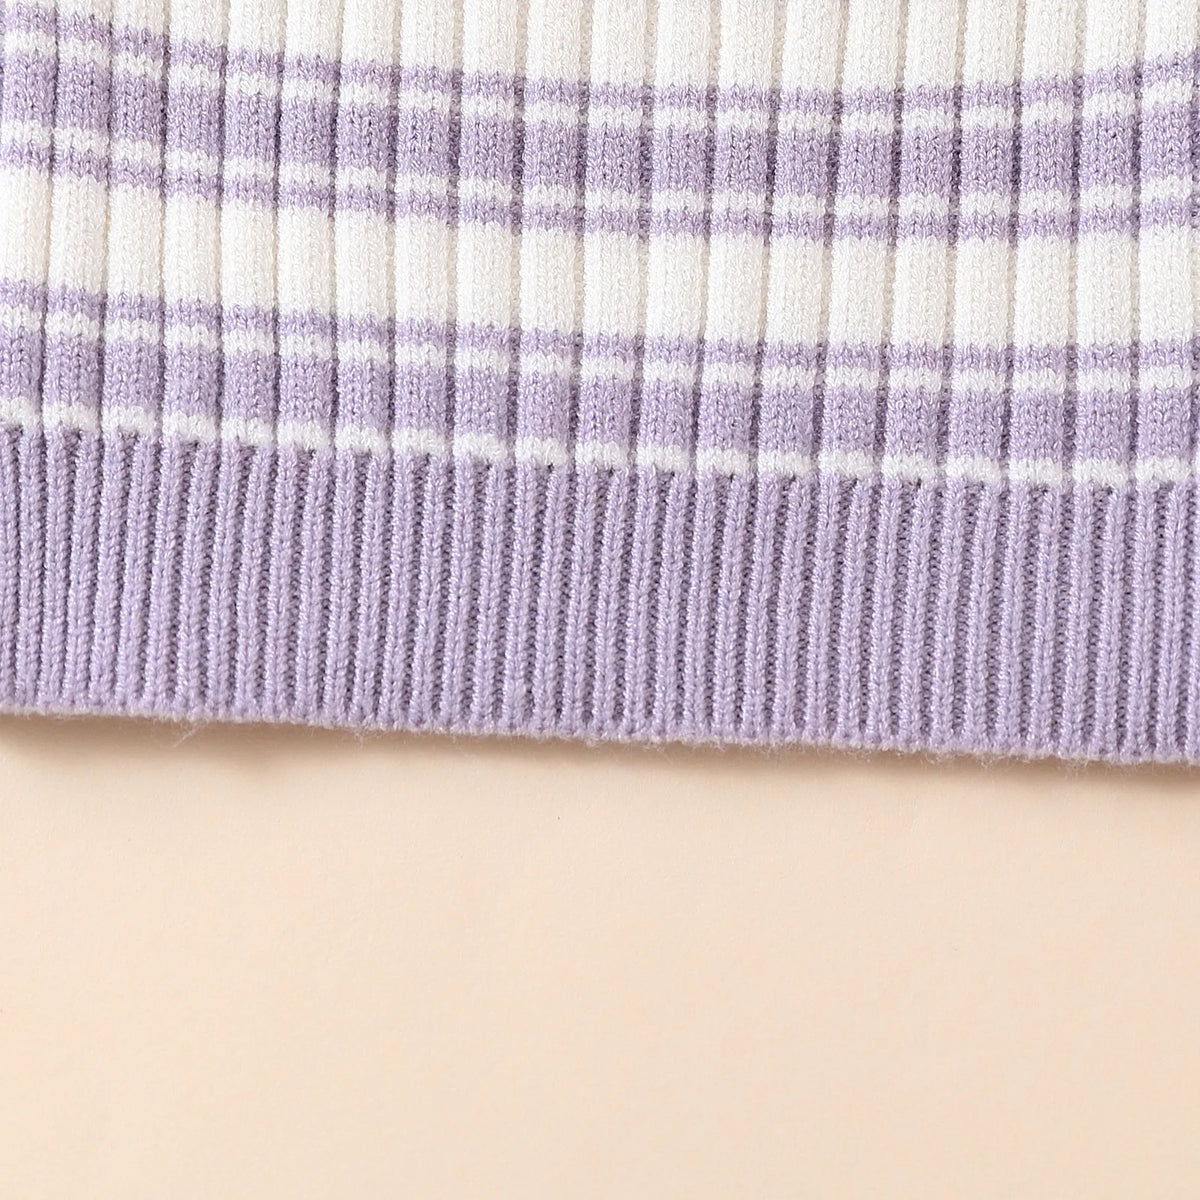 Lilac Stripes Knit Set